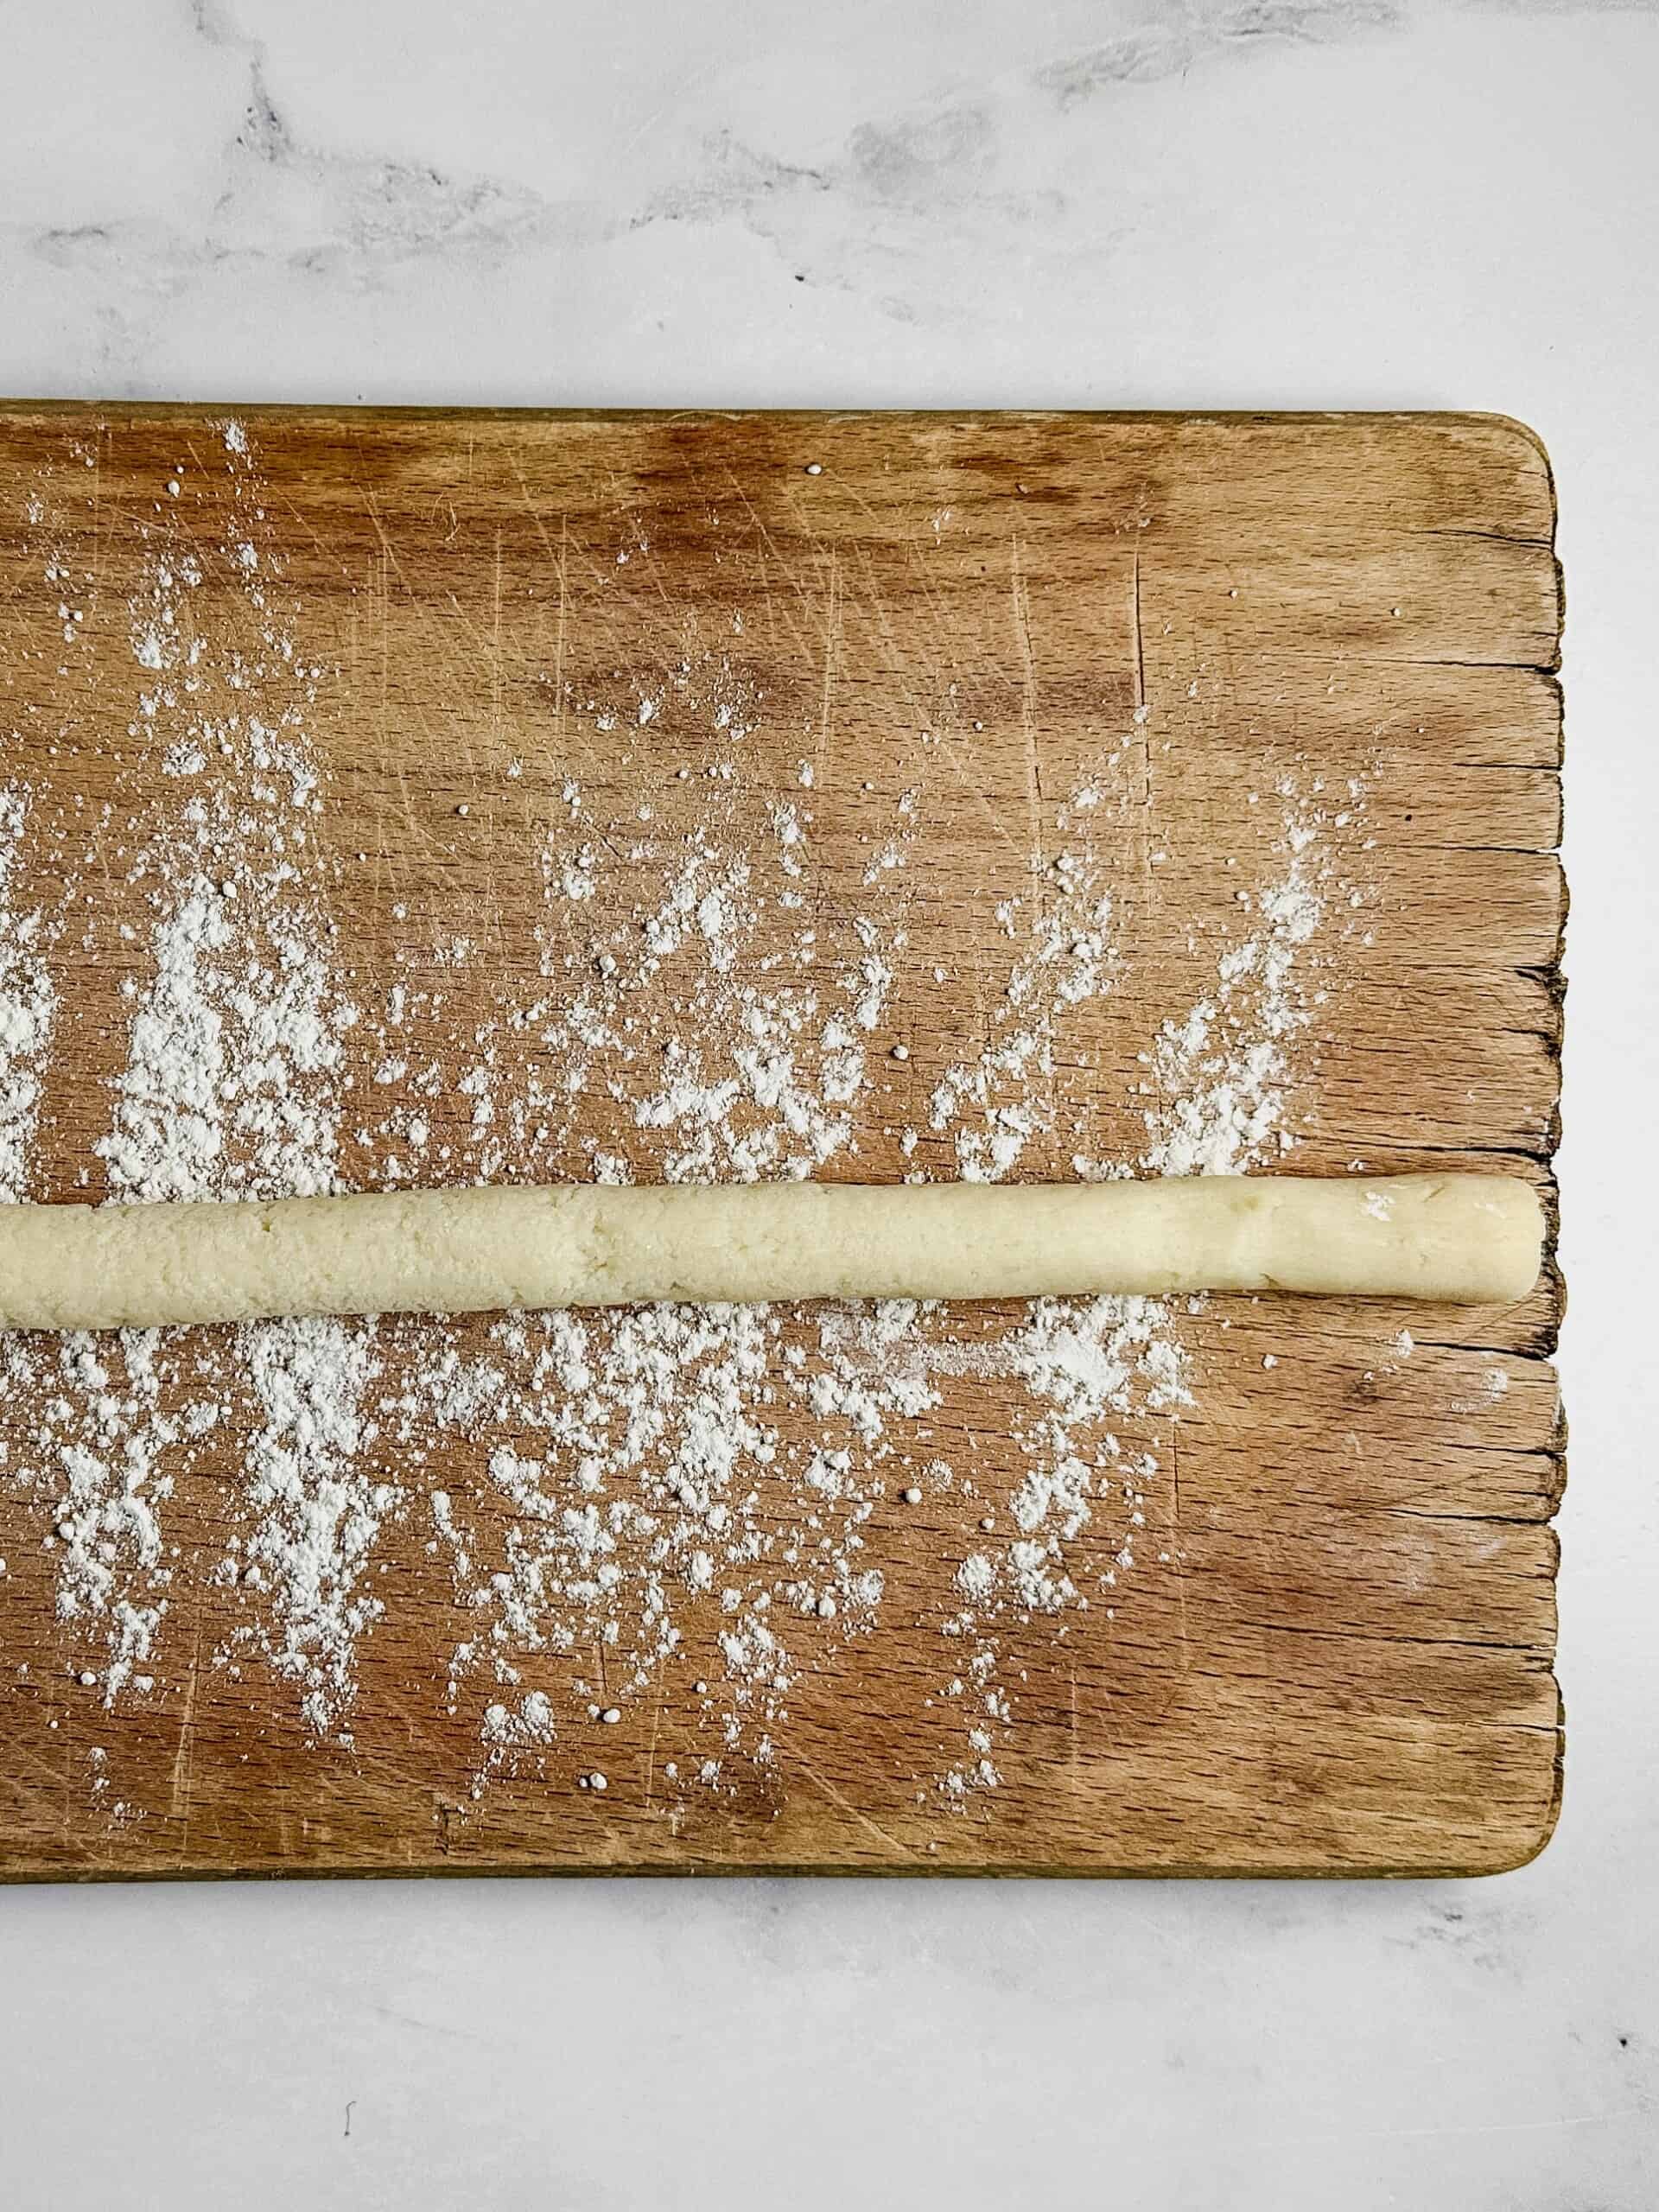 Long roll of dough.